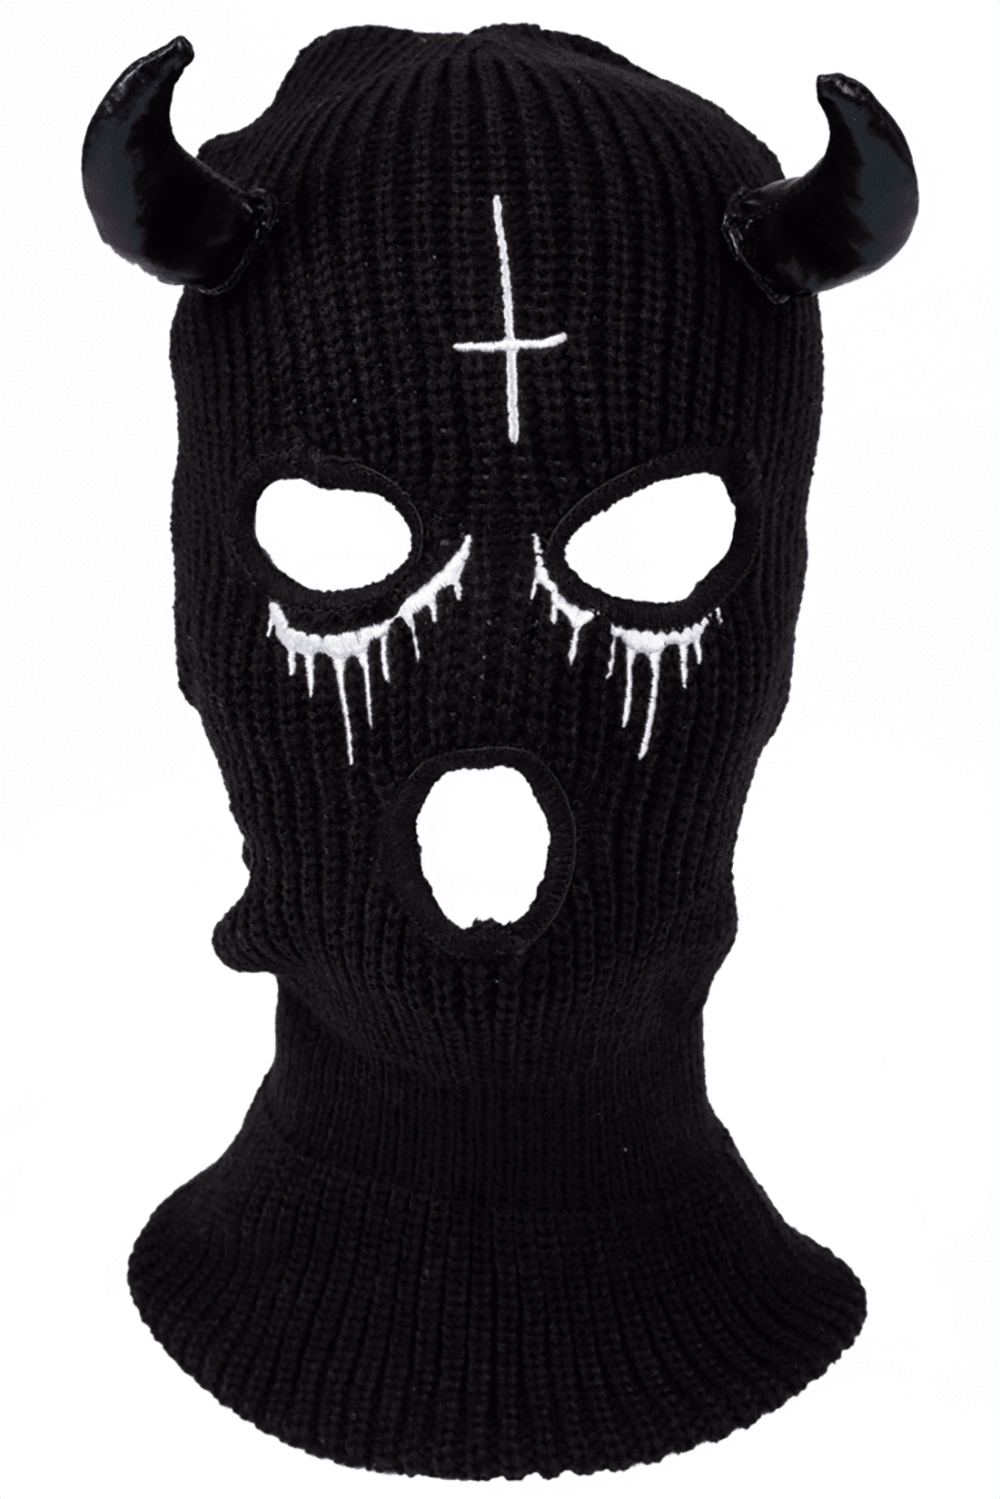 Too Fast Bloody Hell Embroidered Balaclava Ski Mask - VampireFreaks